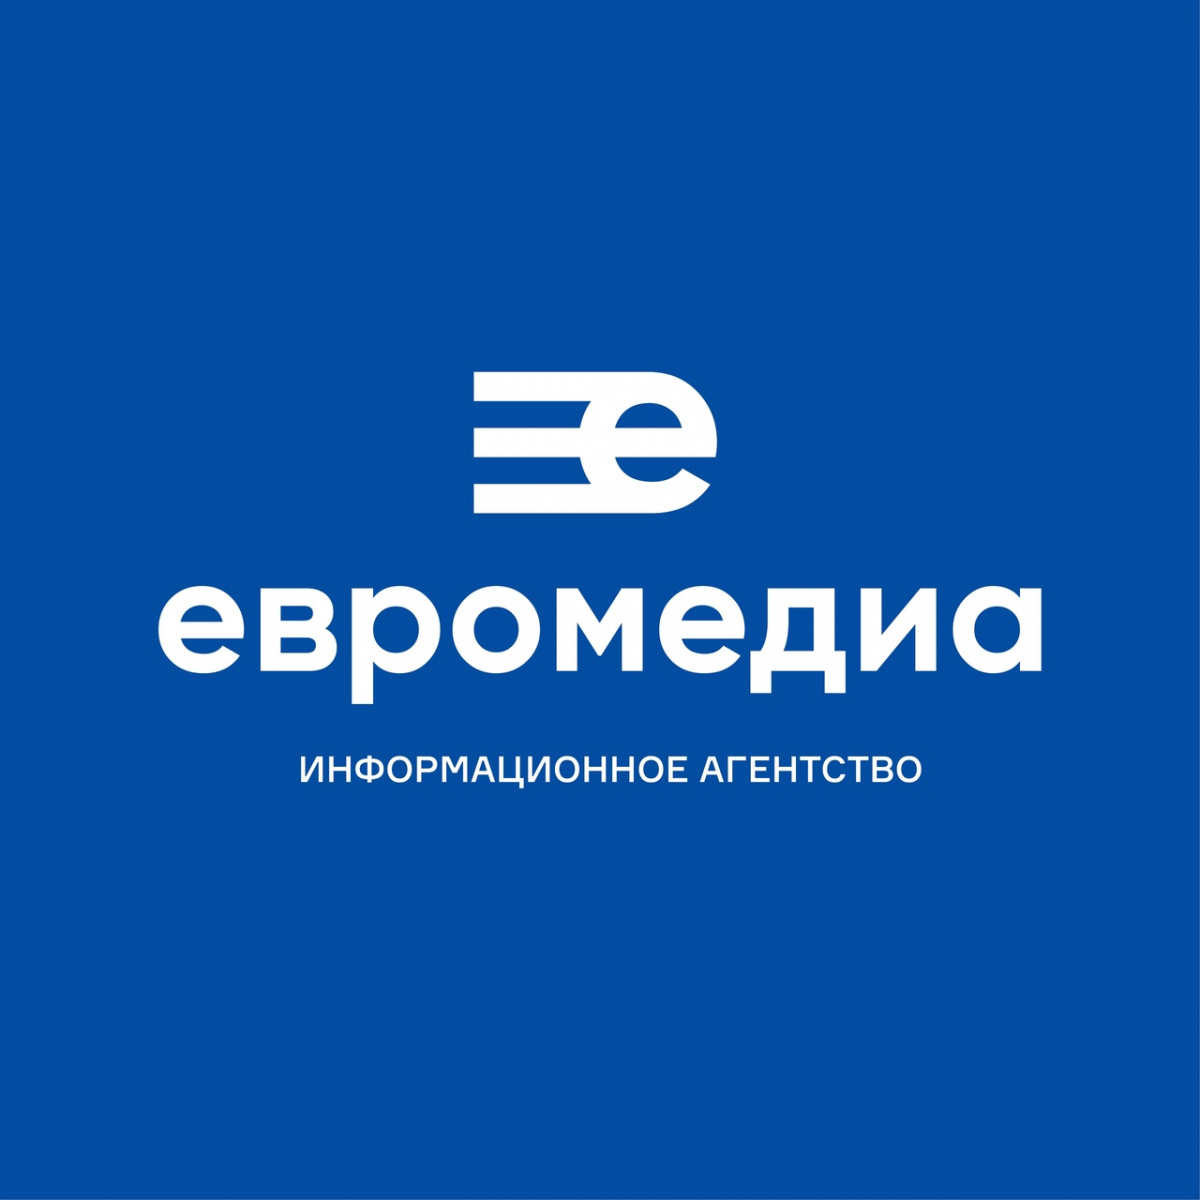 Международный холдинг «ЕвроМедиа» запустил сайт собственного информационного агентства. ЕвроМедиа